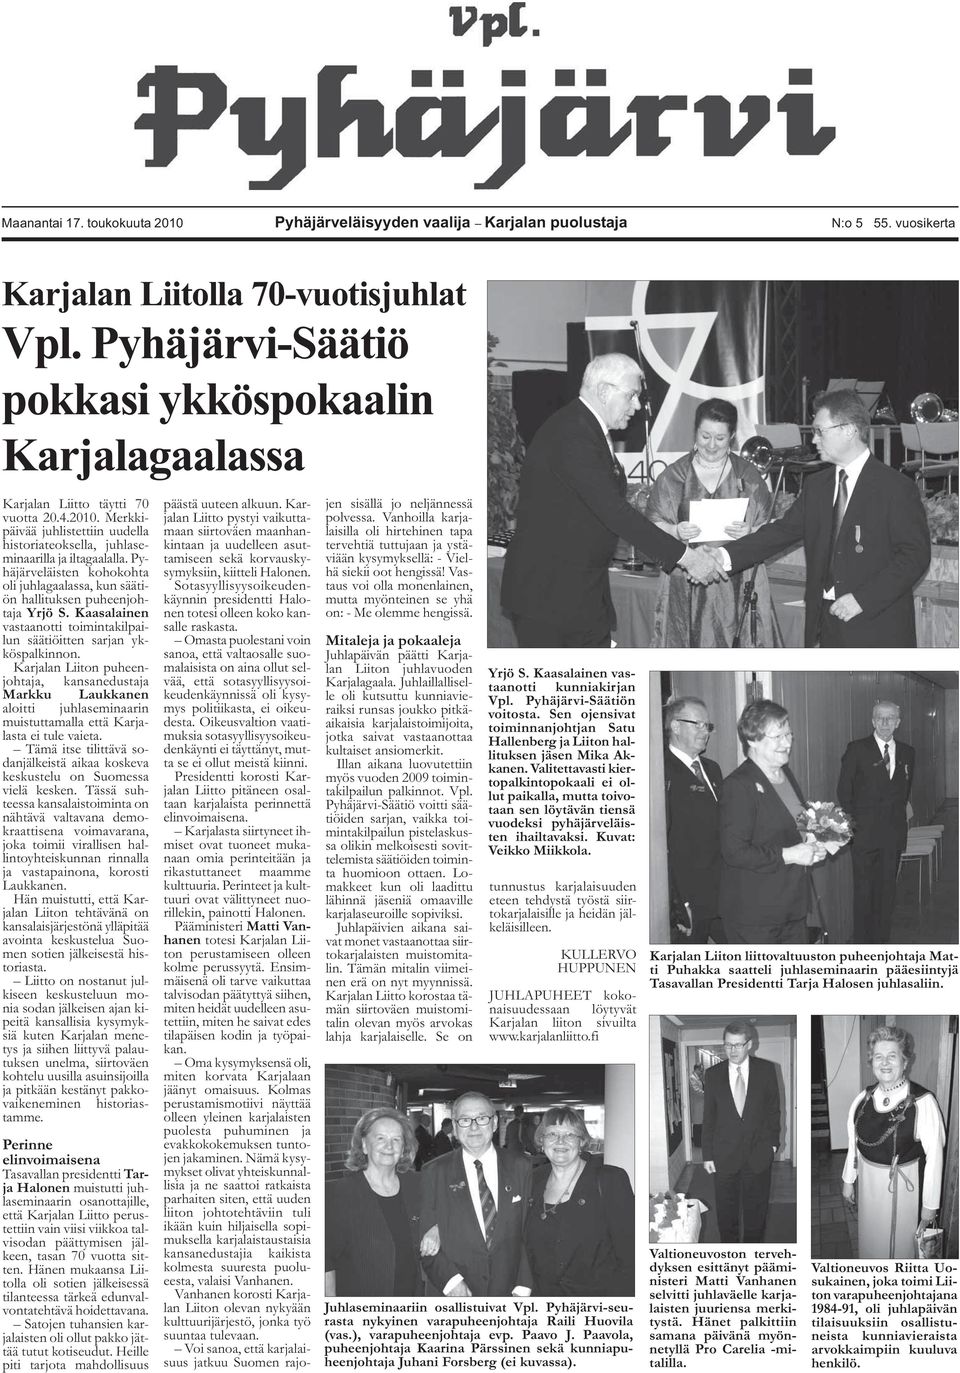 Pyhäjärveläisten kohokohta oli juhlagaalassa, kun säätiön hallituksen puheenjohtaja Yrjö S. Kaasalainen vastaanotti toimintakilpailun säätiöitten sarjan ykköspalkinnon.